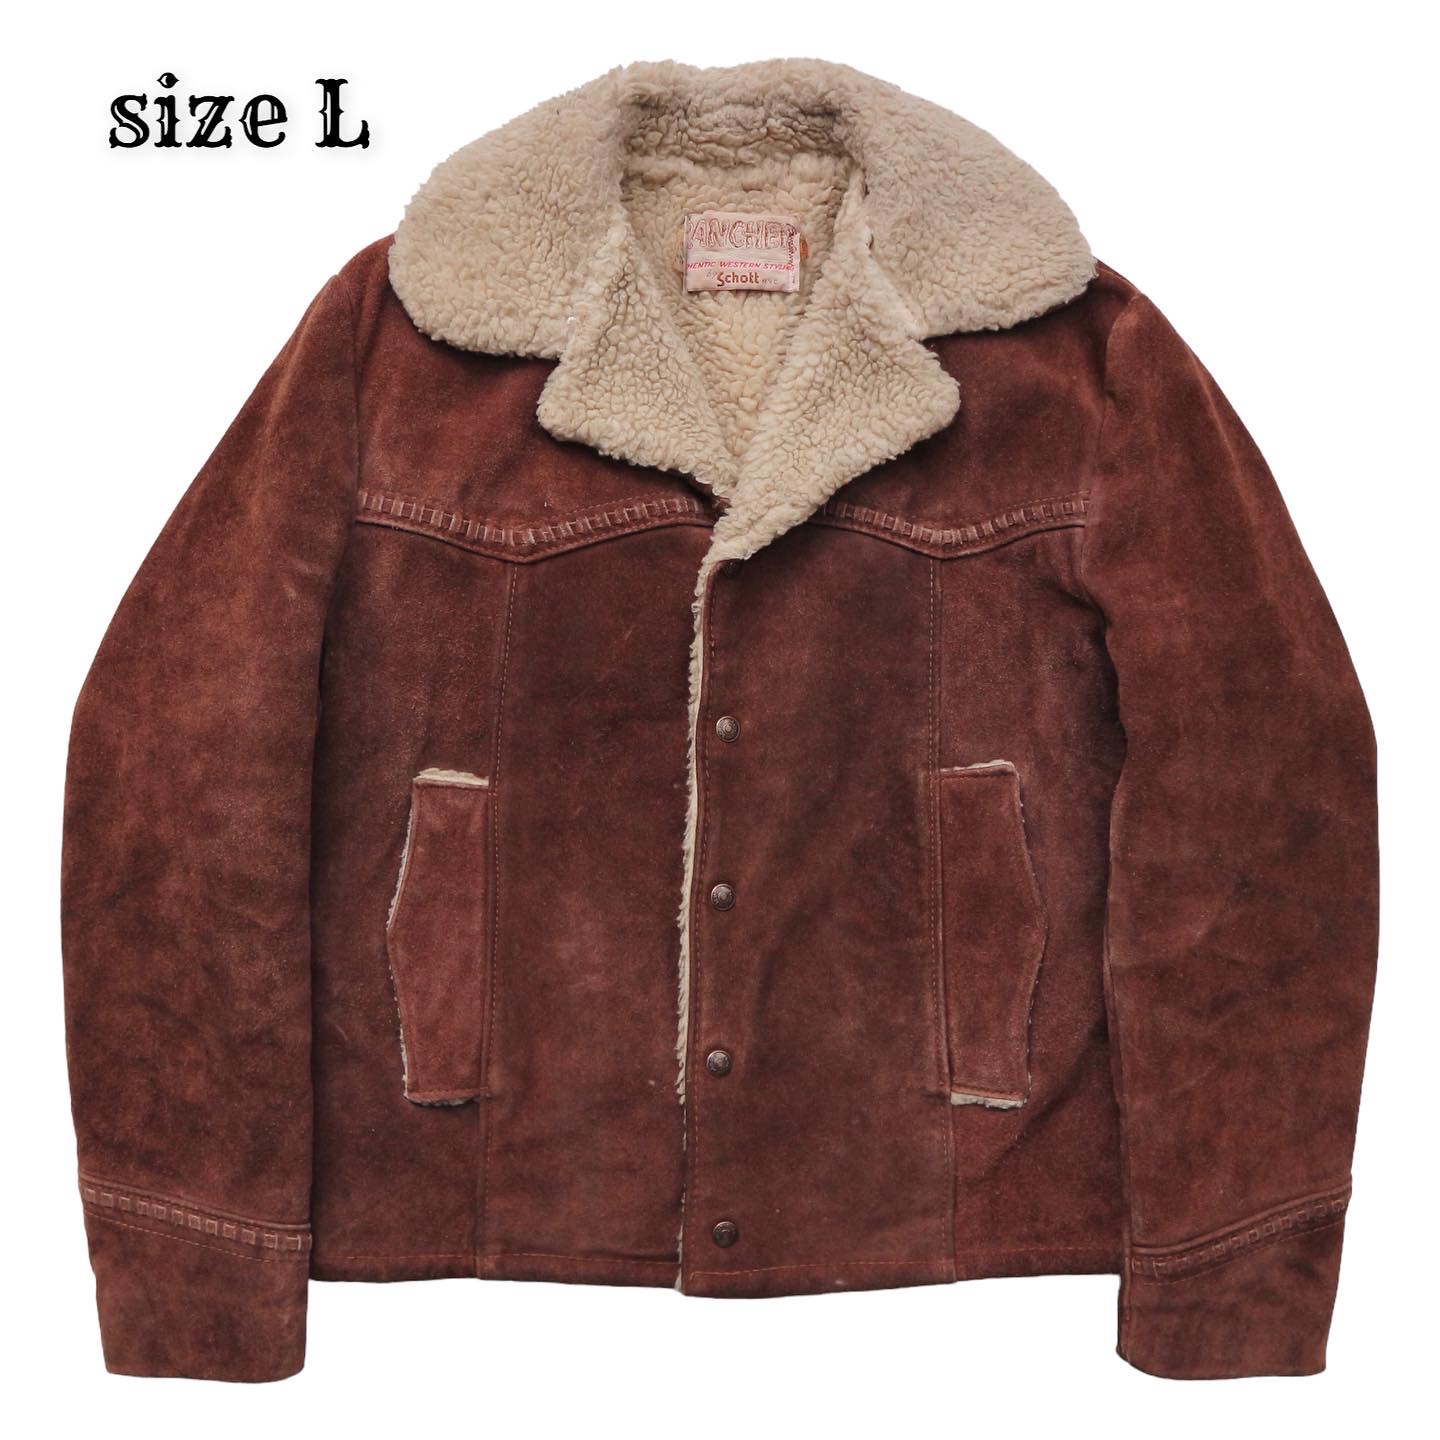 Schott Sherpa Lined Western Style Jacket Size L